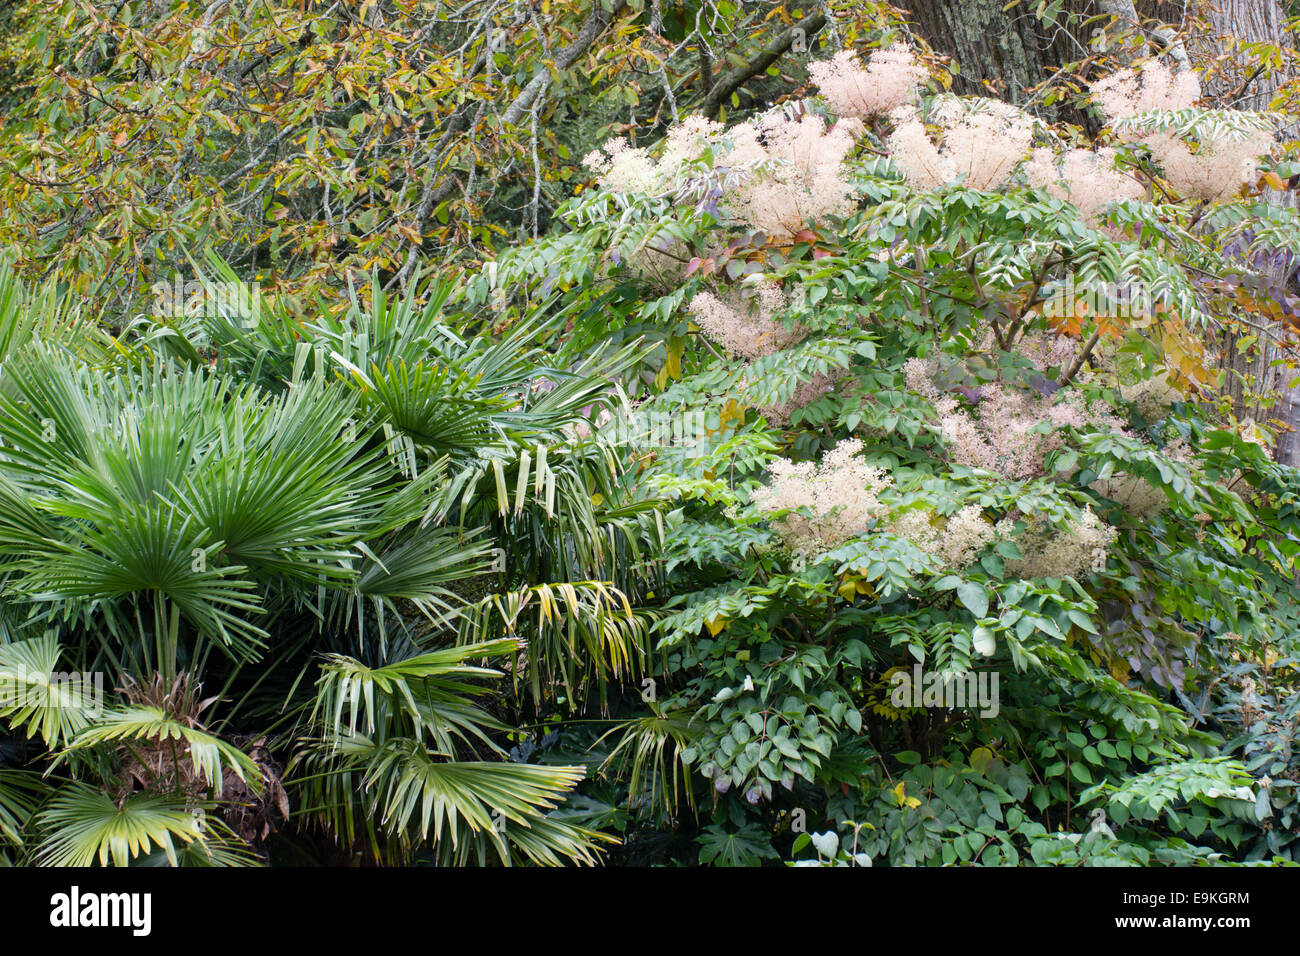 La hardy Chusan palm, trachycarpus fortunei, Giapponese e la struttura angelica, Aralia elata, si combinano in un esotico schema impianto Foto Stock